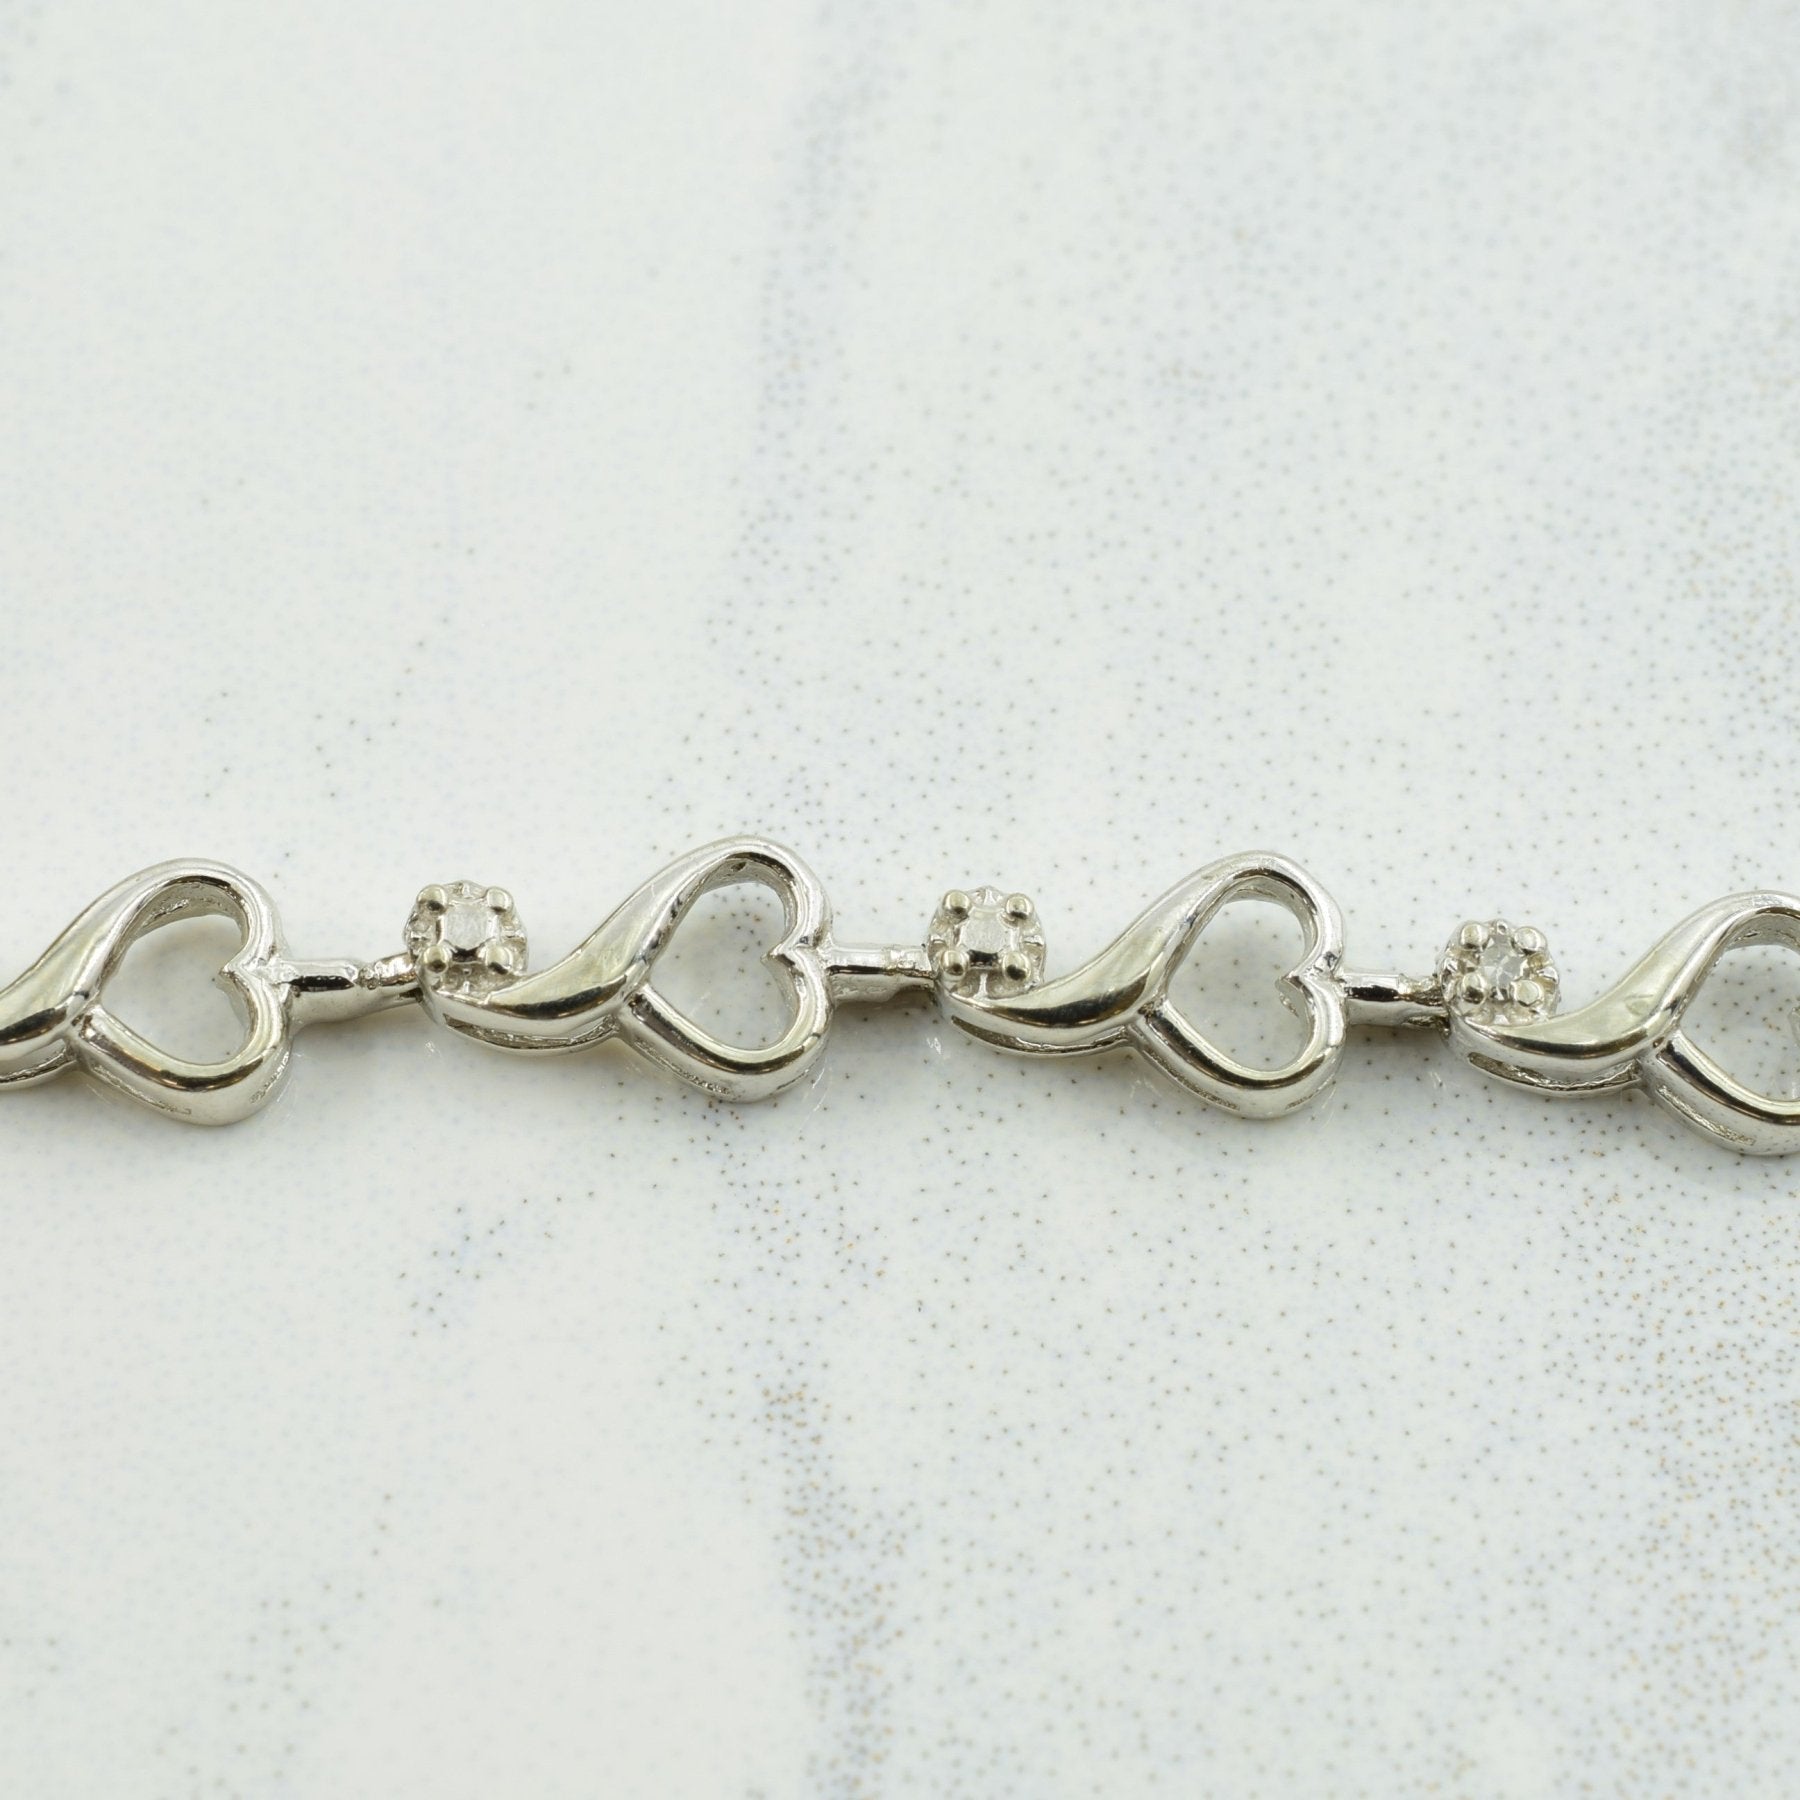 10k White Gold Diamond Heart Bracelet | 0.03ctw | 7.50